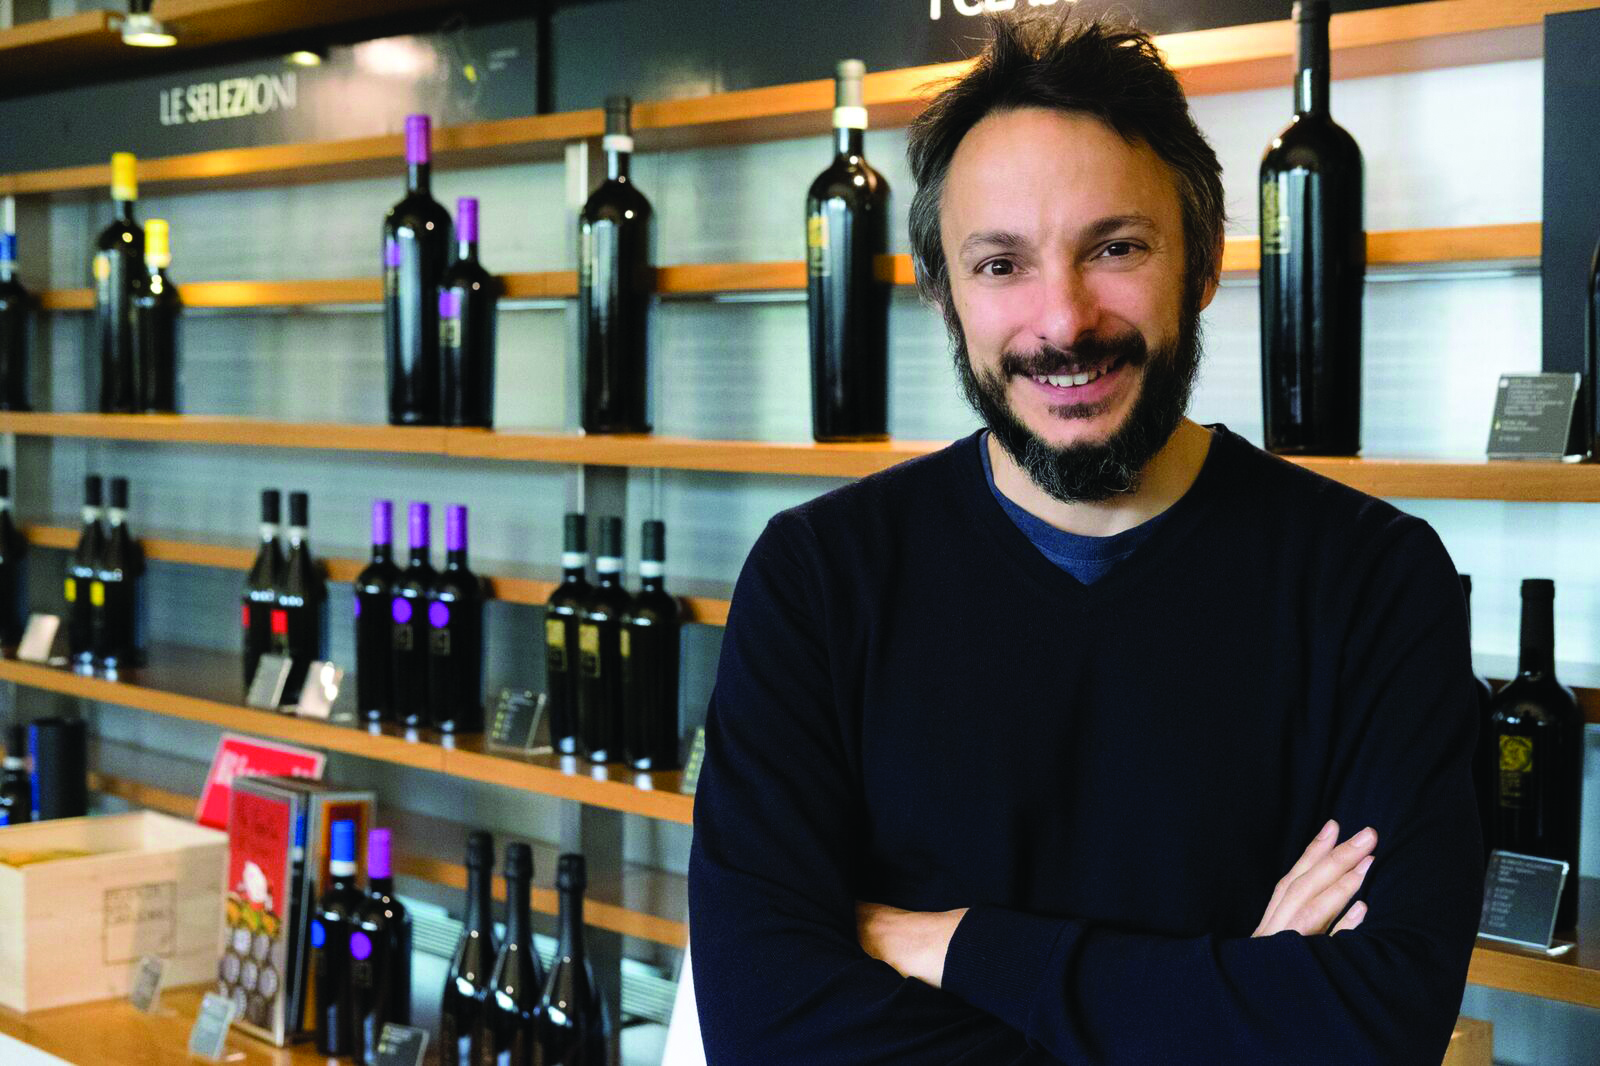 Migliori vini italiani: Feudo San Gregorio tra le 100 Eccellenze Italiane per Forbes